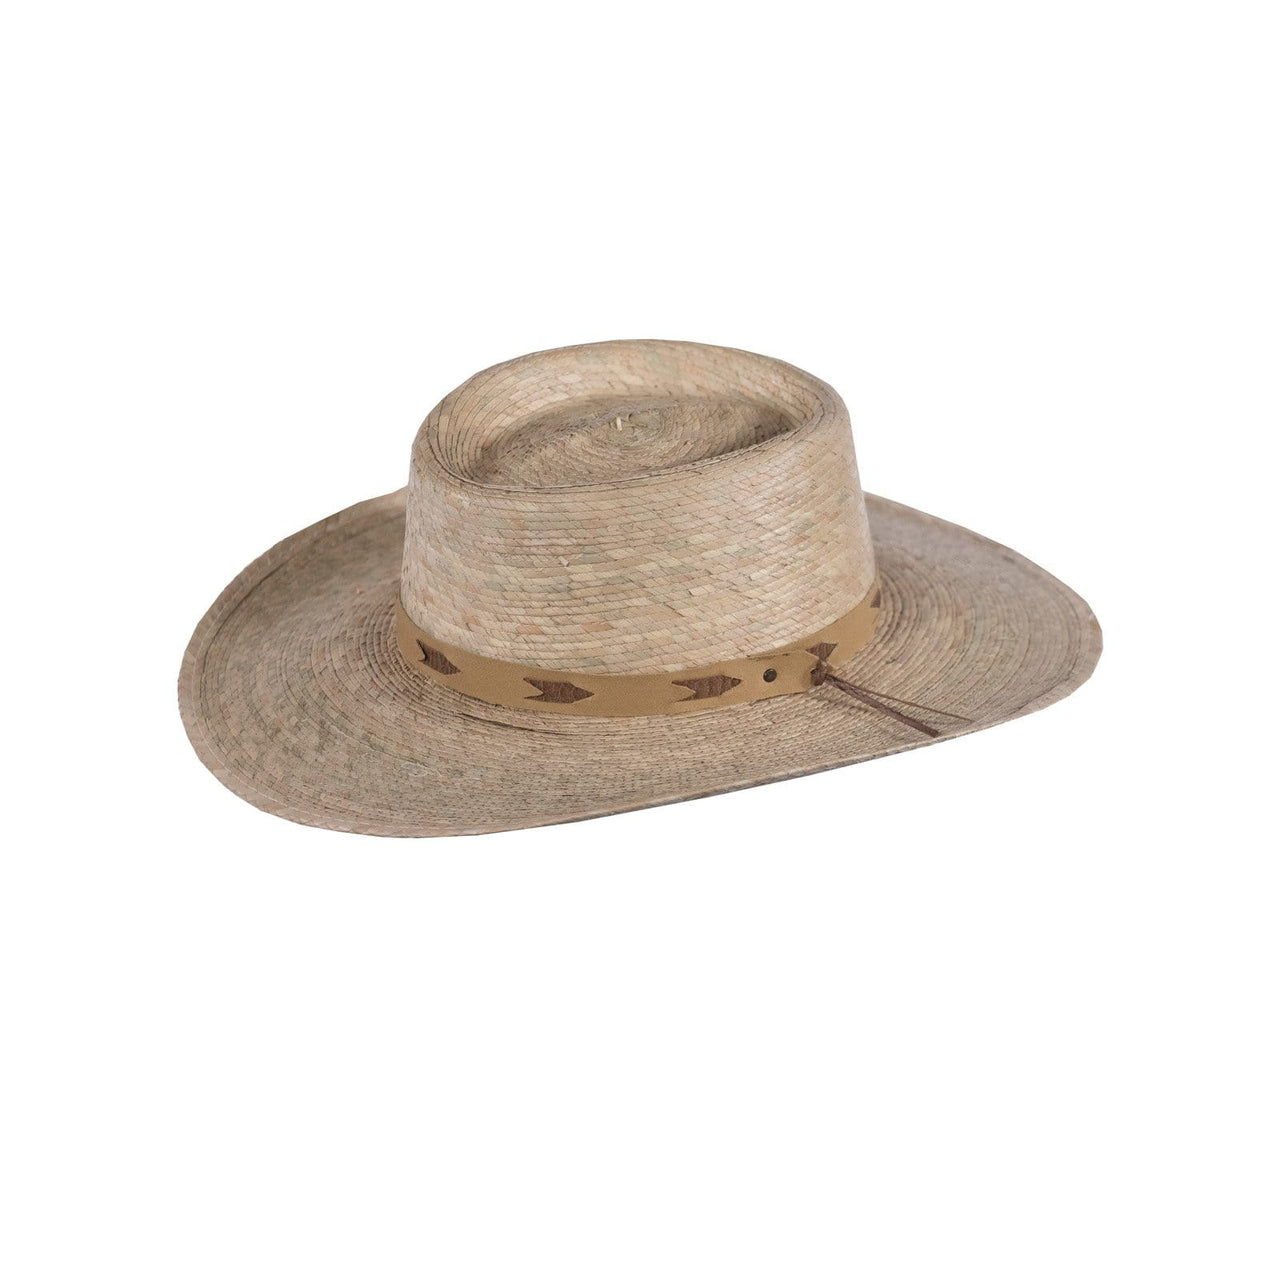 Outback Trading Company Santa Fe Hat